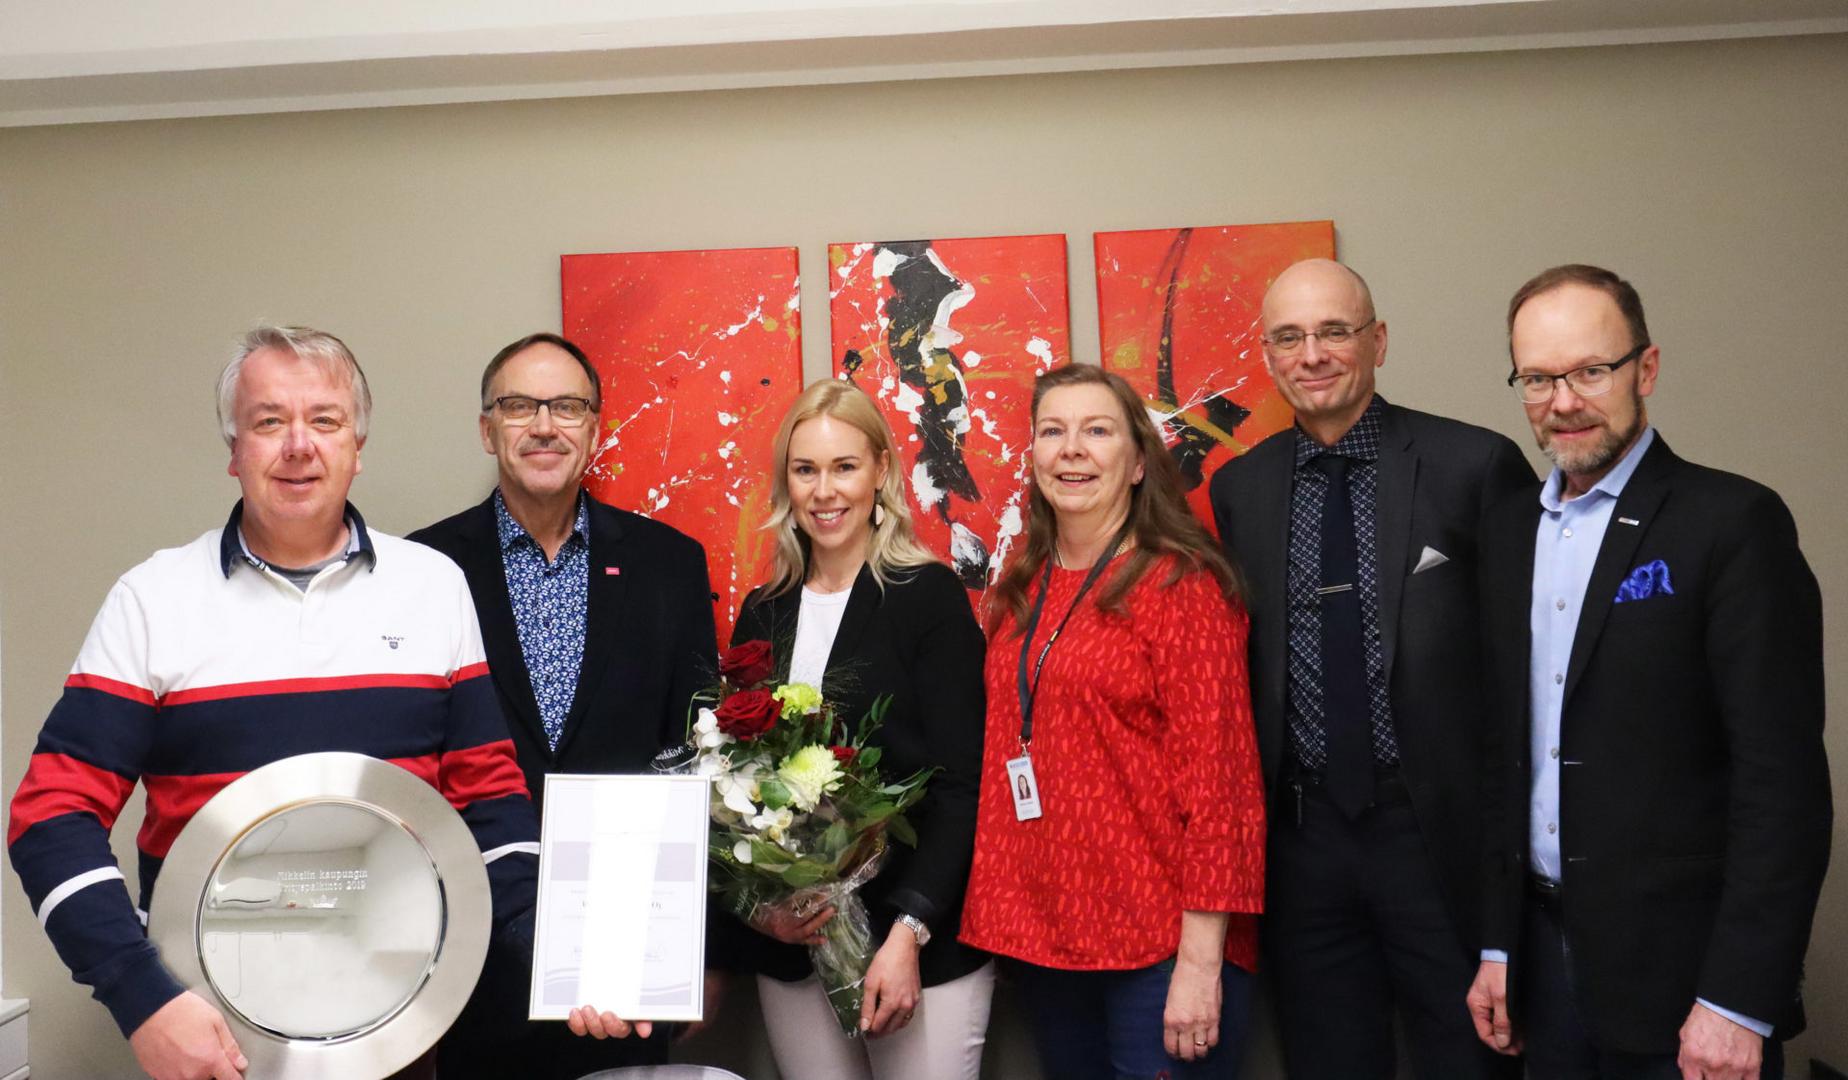 Mikkelin kaupungin yrityspalkinto 2019 luovutettiin Mikkelin Nostajat Oy:lle